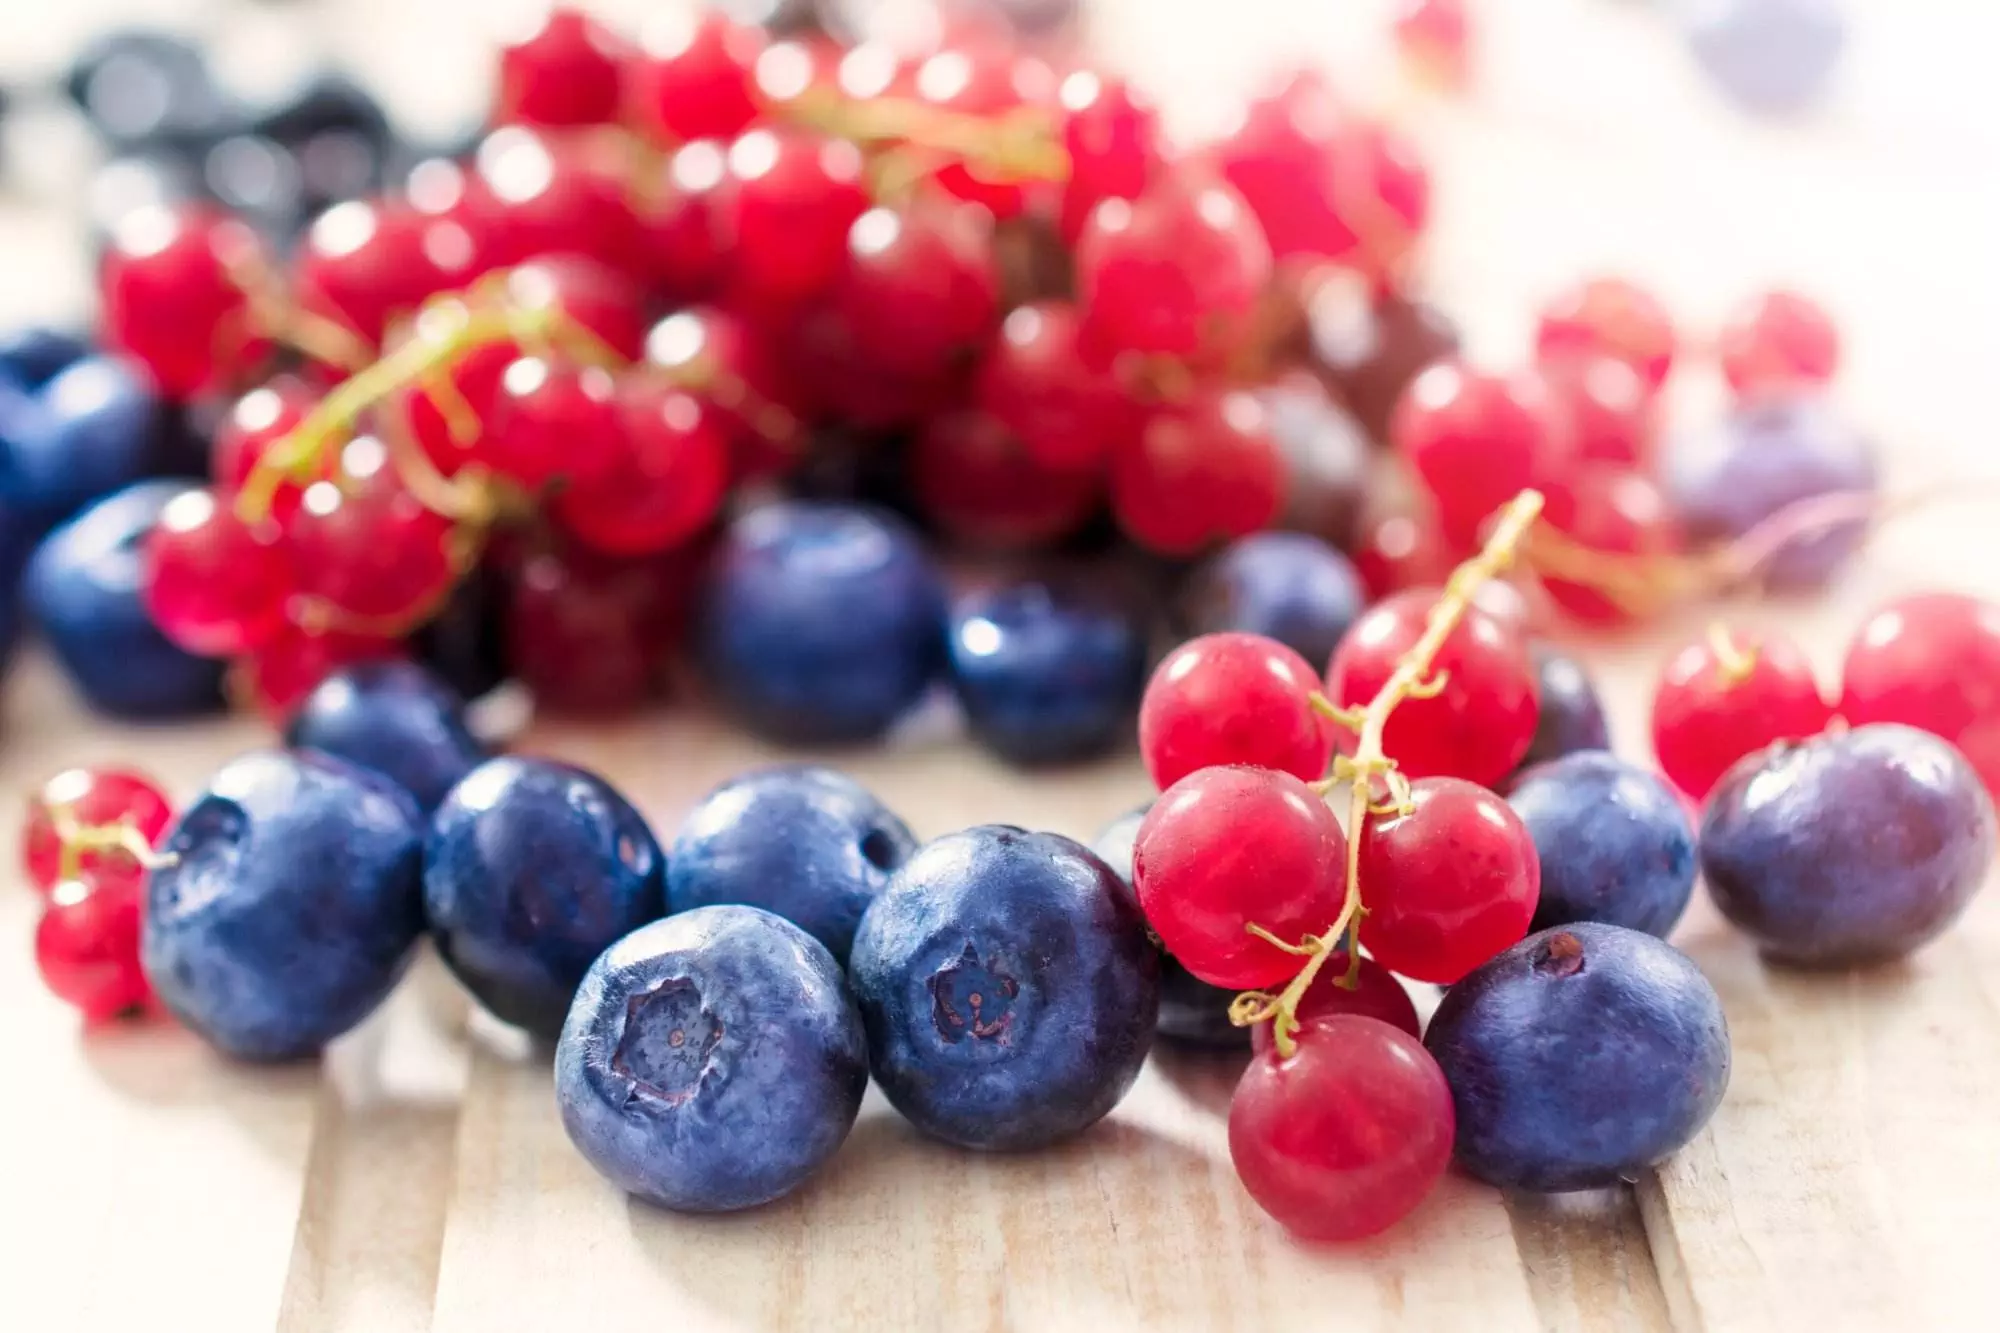 nutritious berries